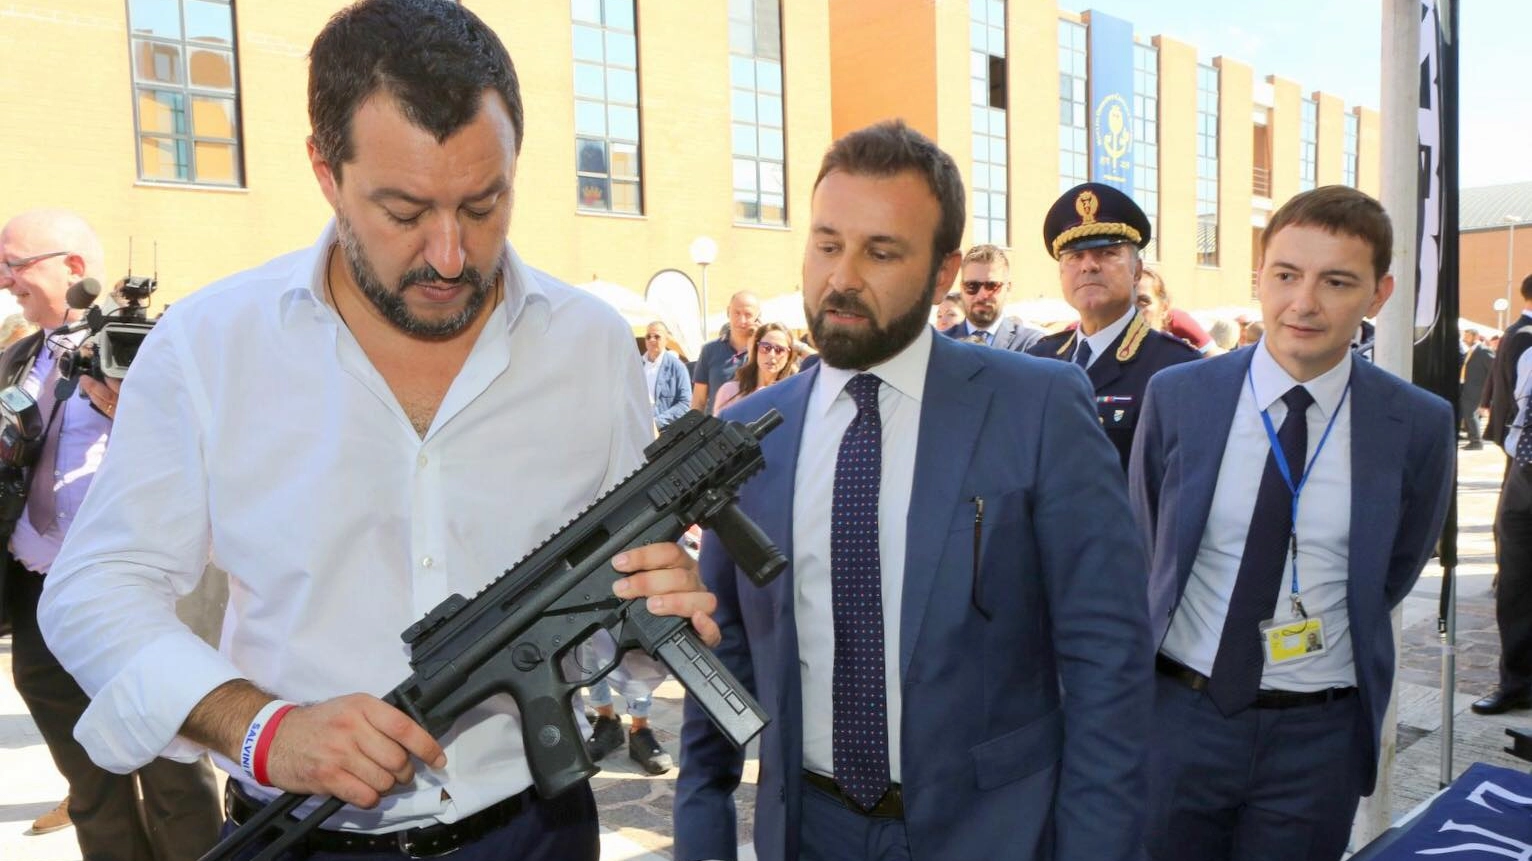 Salvini imbraccia un mitra: la foto pubblicata su Facebook da Luca Morisi